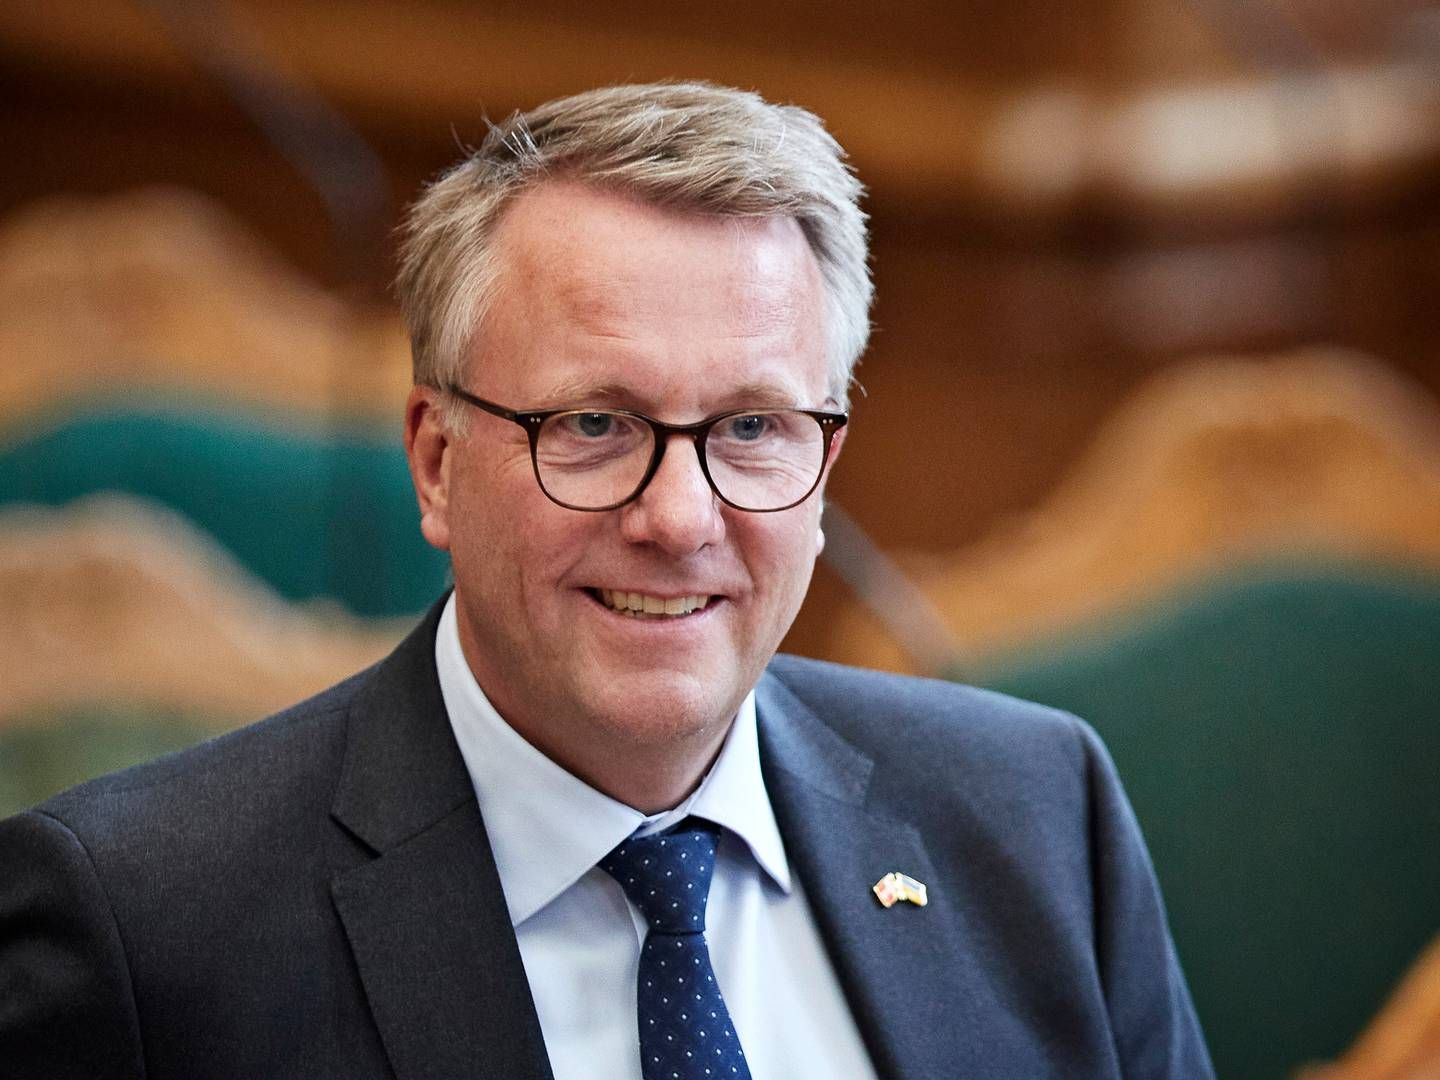 Erhvervsminister Morten Bødskov (S) har fået præsenteret en ny rapport, som b.la. vil afskaffe den såkaldte DIS-ordning. | Foto: Jens Dresling/Ritzau Scanpix